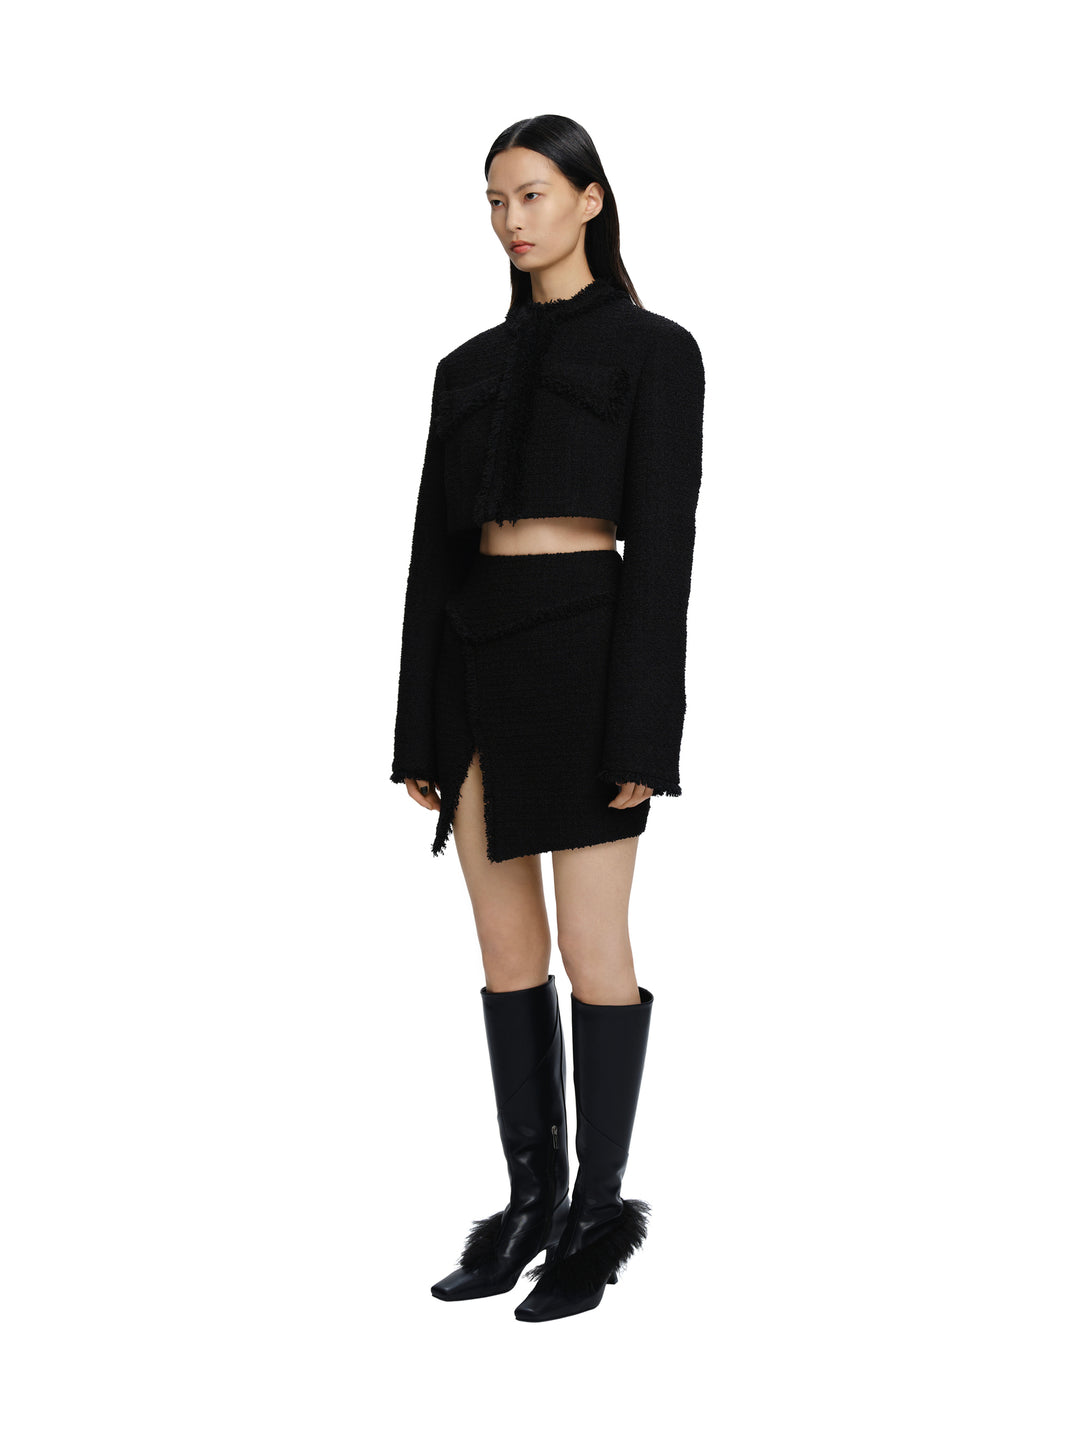 Woven Tassel Bodycon Mini Skirt